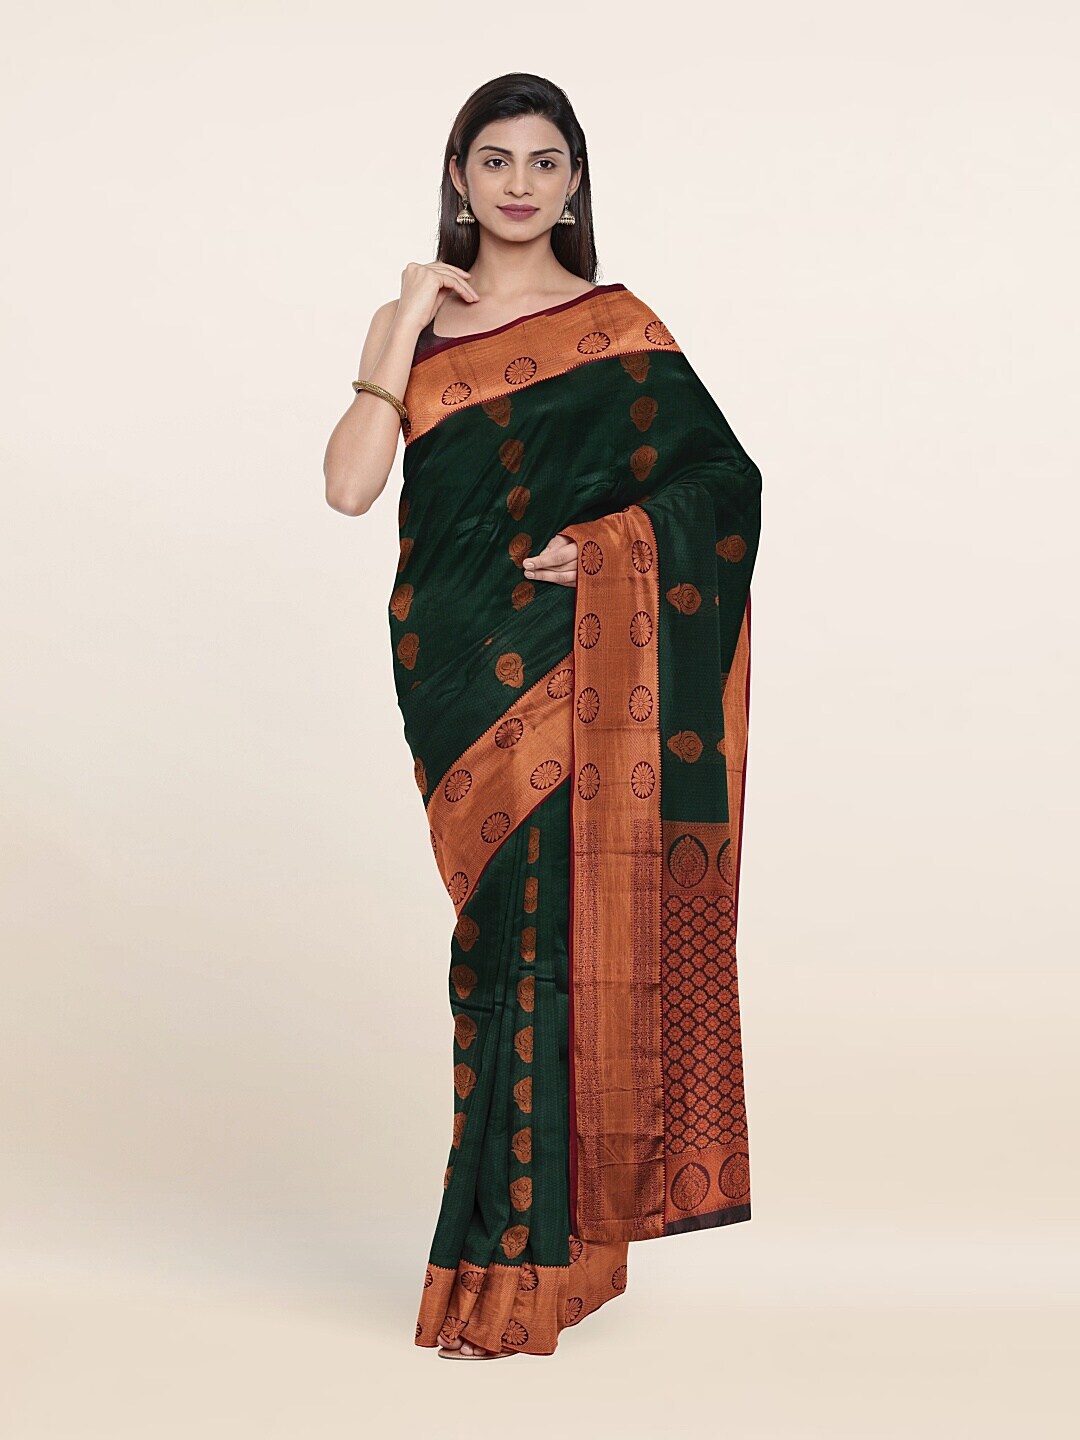 Pothys Green & Copper-Toned Floral Zari Pure Silk Saree Price in India